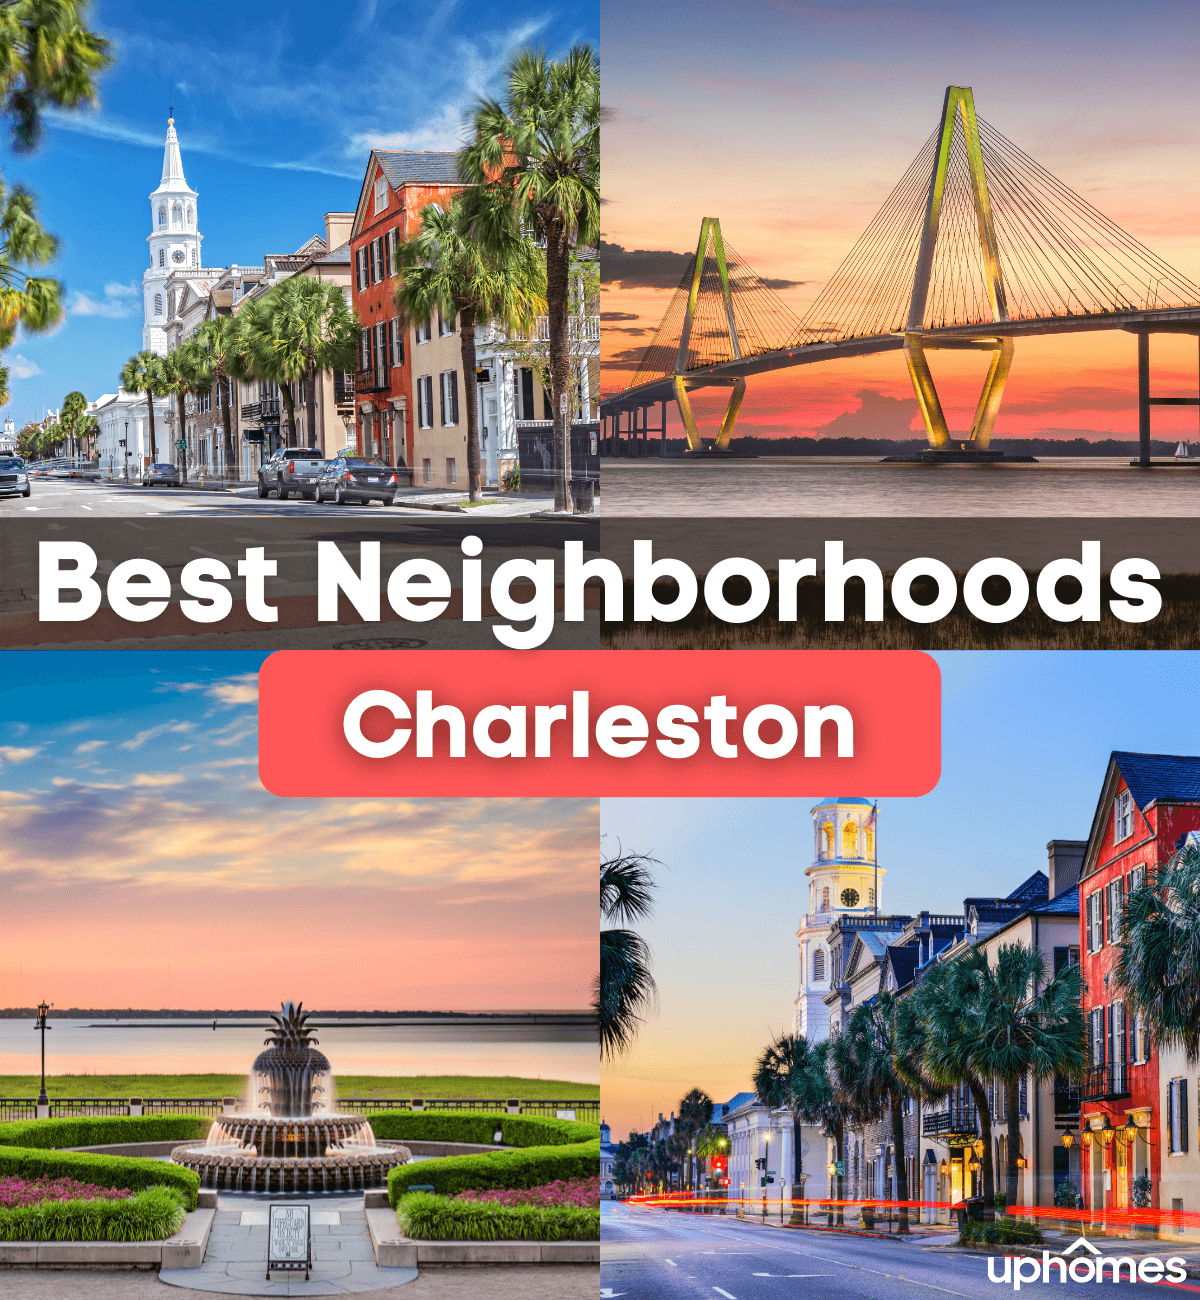 7 Best Neighborhoods in Charleston, SC - Best Subdivisions Charleston